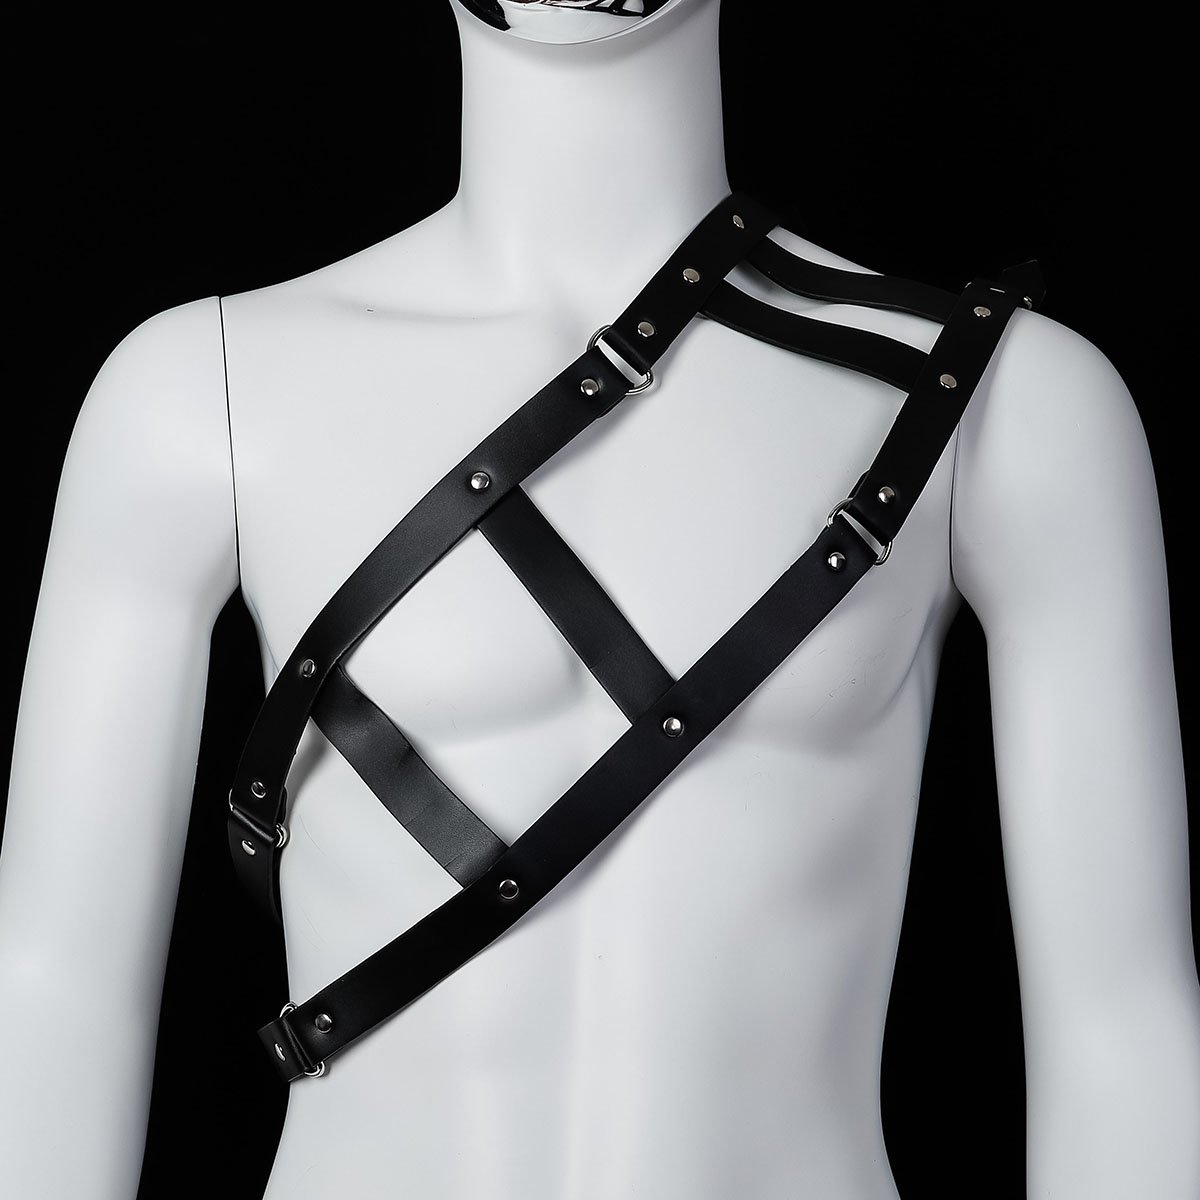 Foto van Banoch - Chest gladiator harness Robert - imitatie leren harnas voor man